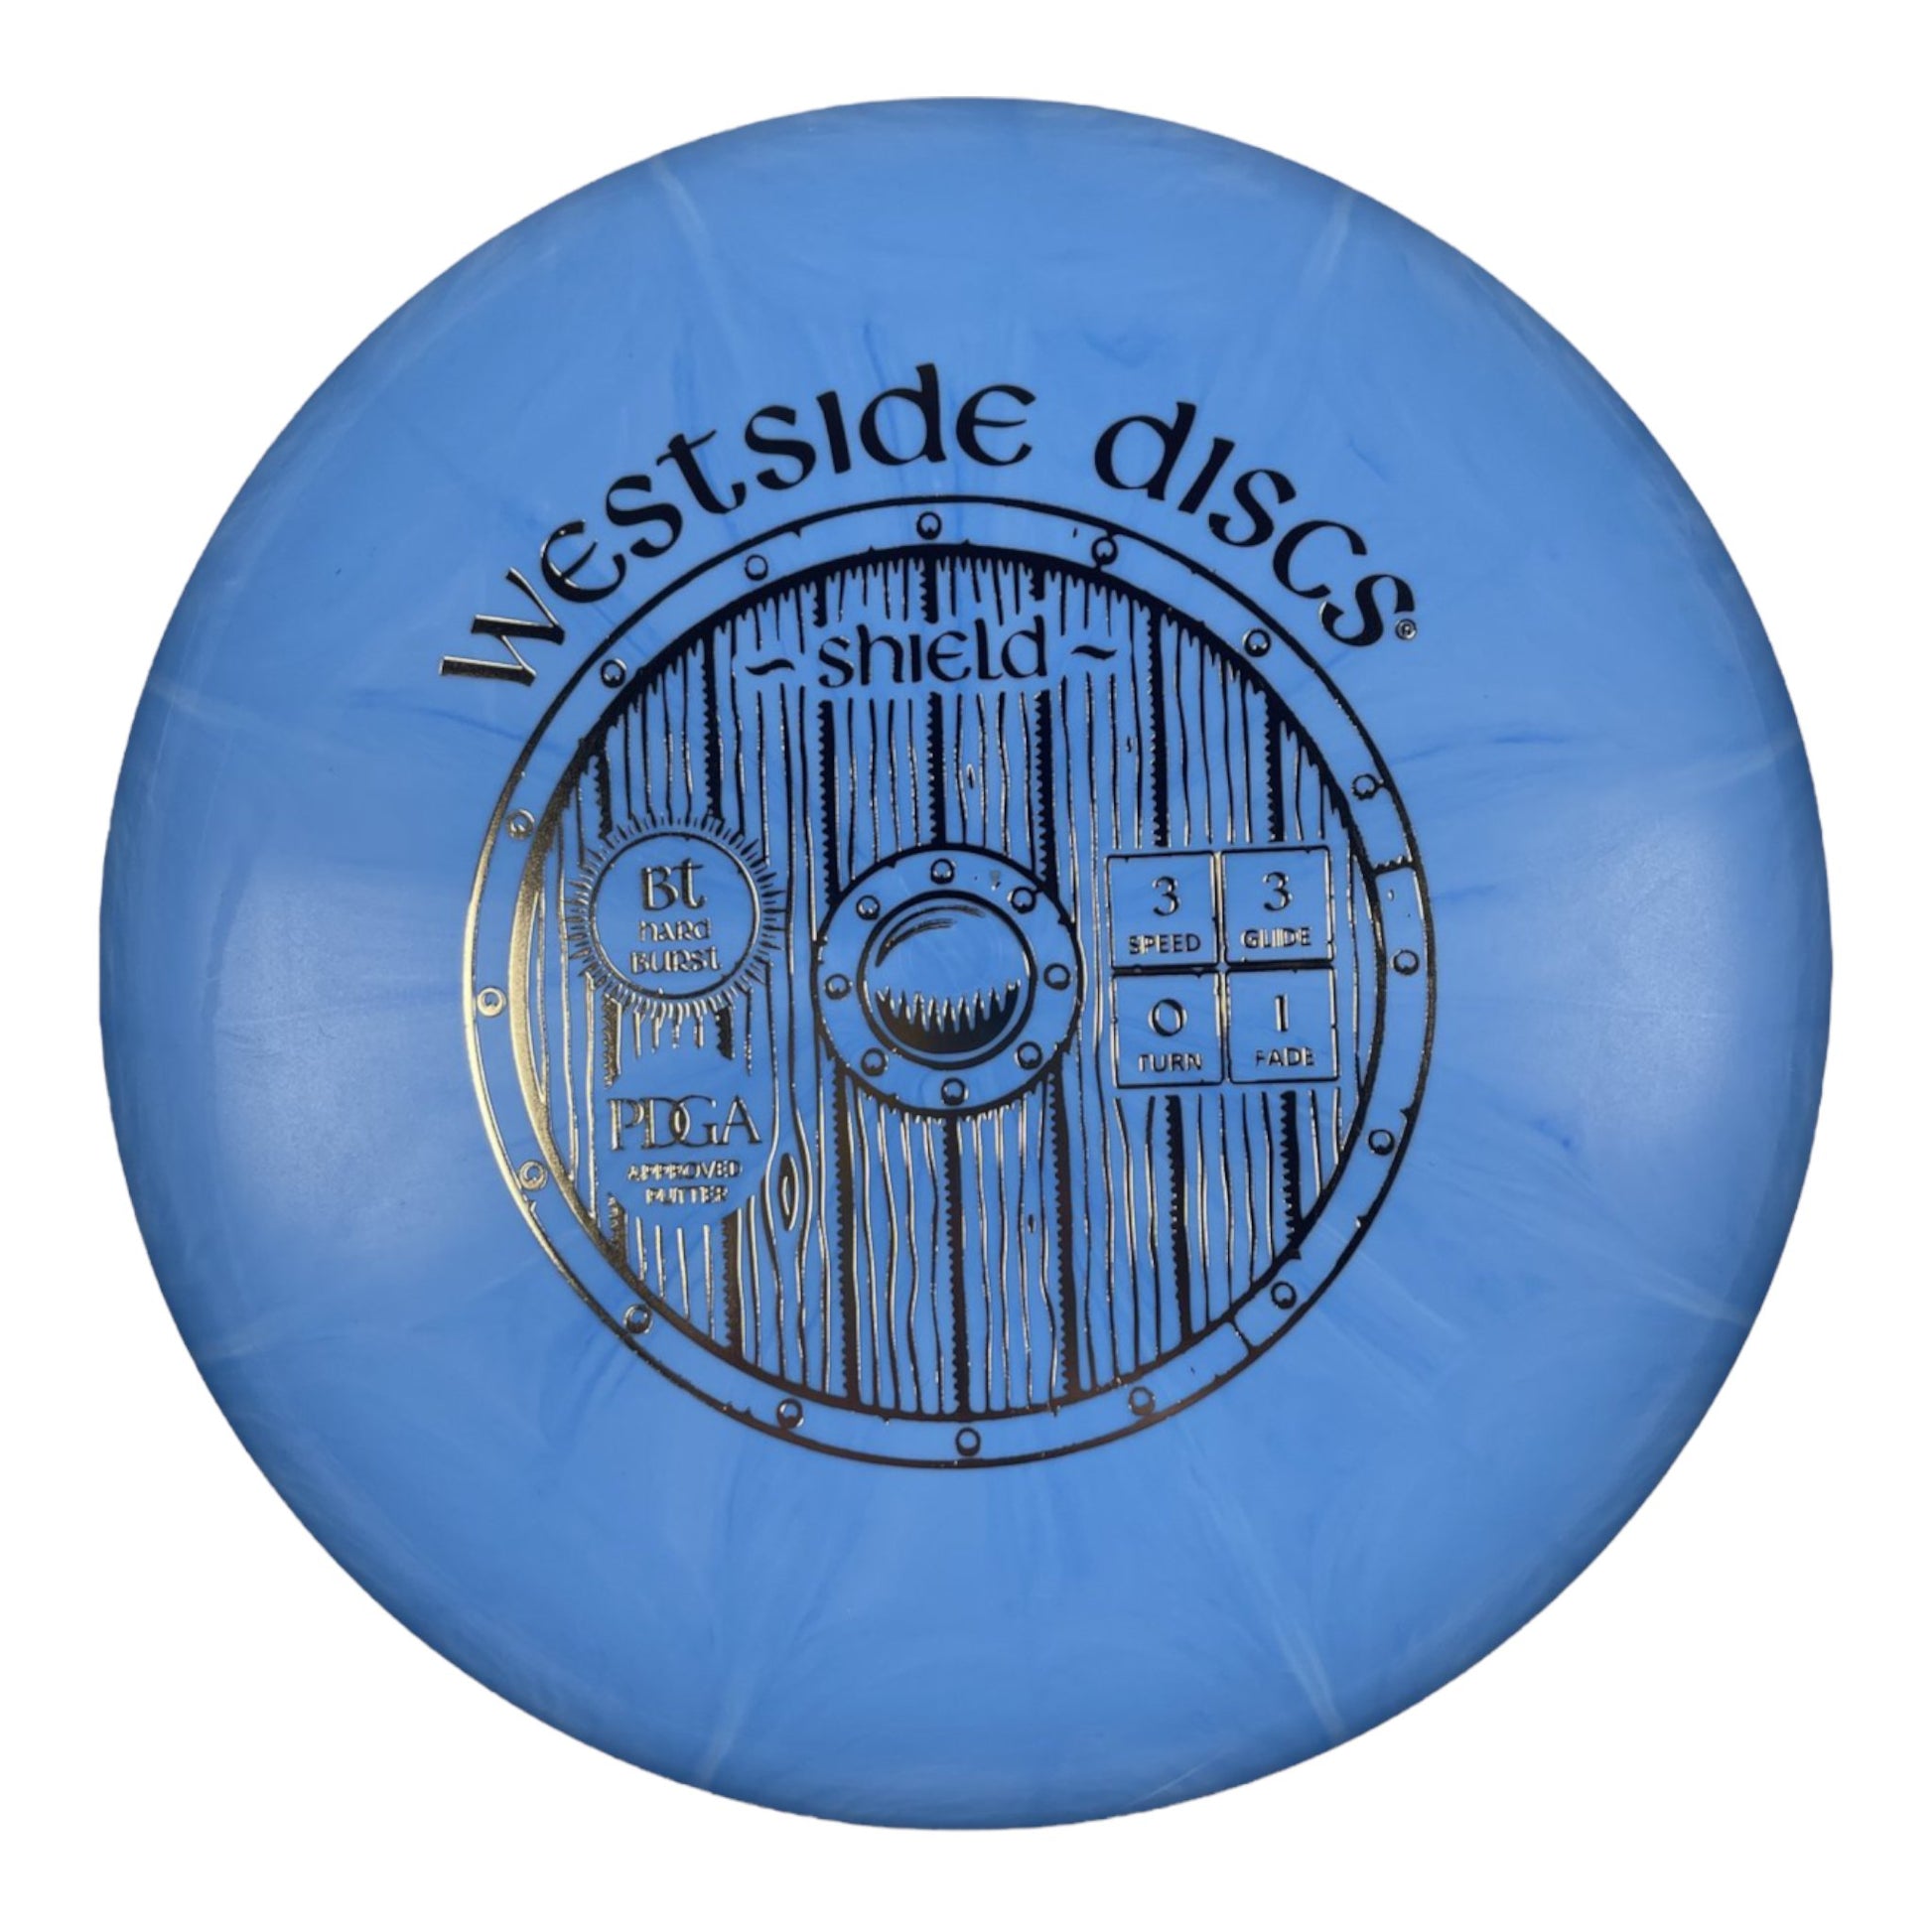 Westside Discs Shield | BT Burst | Blue/Gold 175g Disc Golf